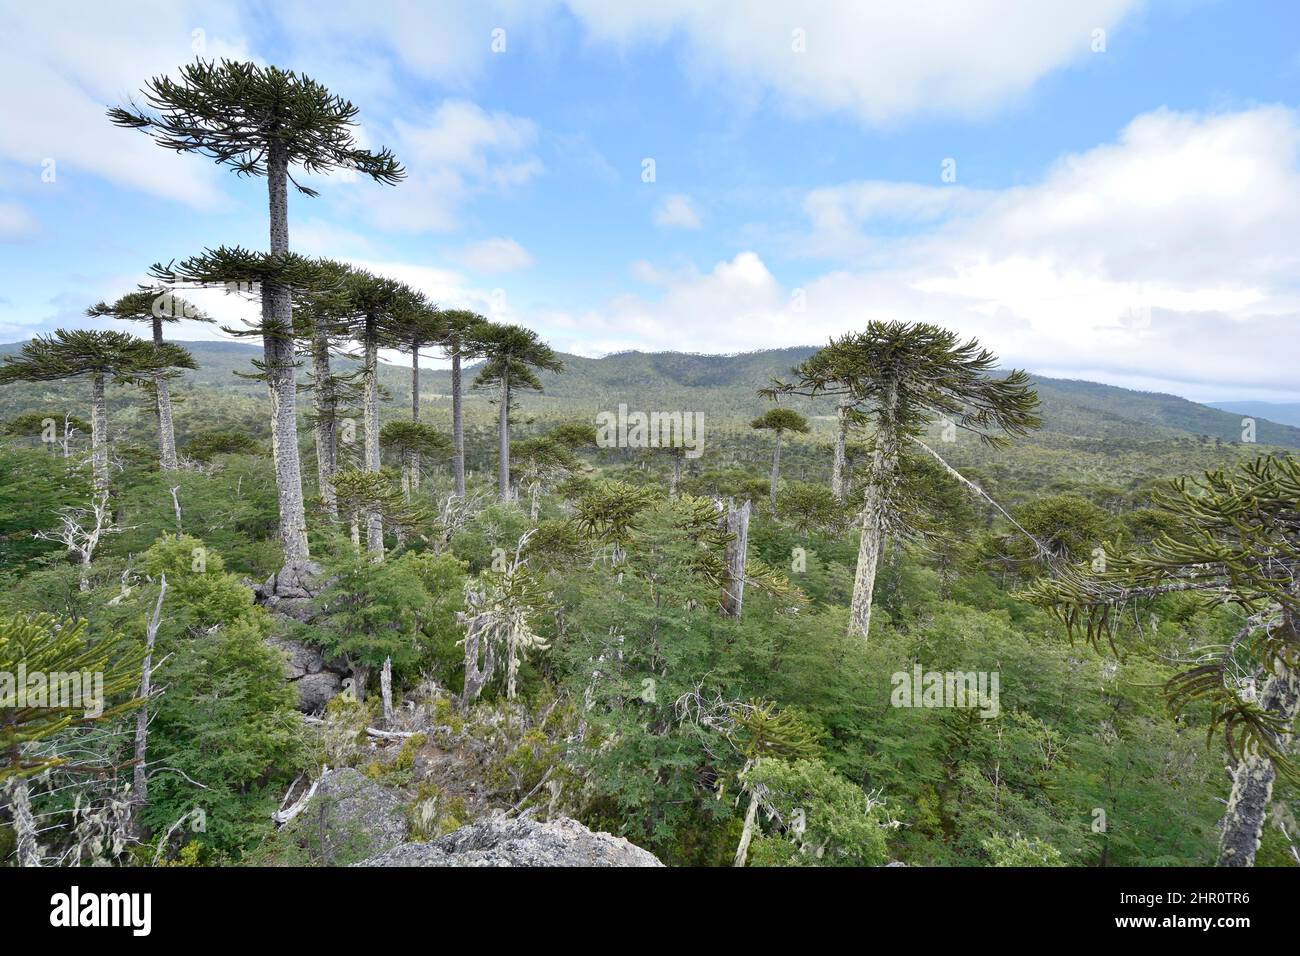 Monkeypuzzle tree (Araucaria araucana) forest, Cerro Anay, Nahuelbuta National Park, IX Region of Araucania, Chile Stock Photo